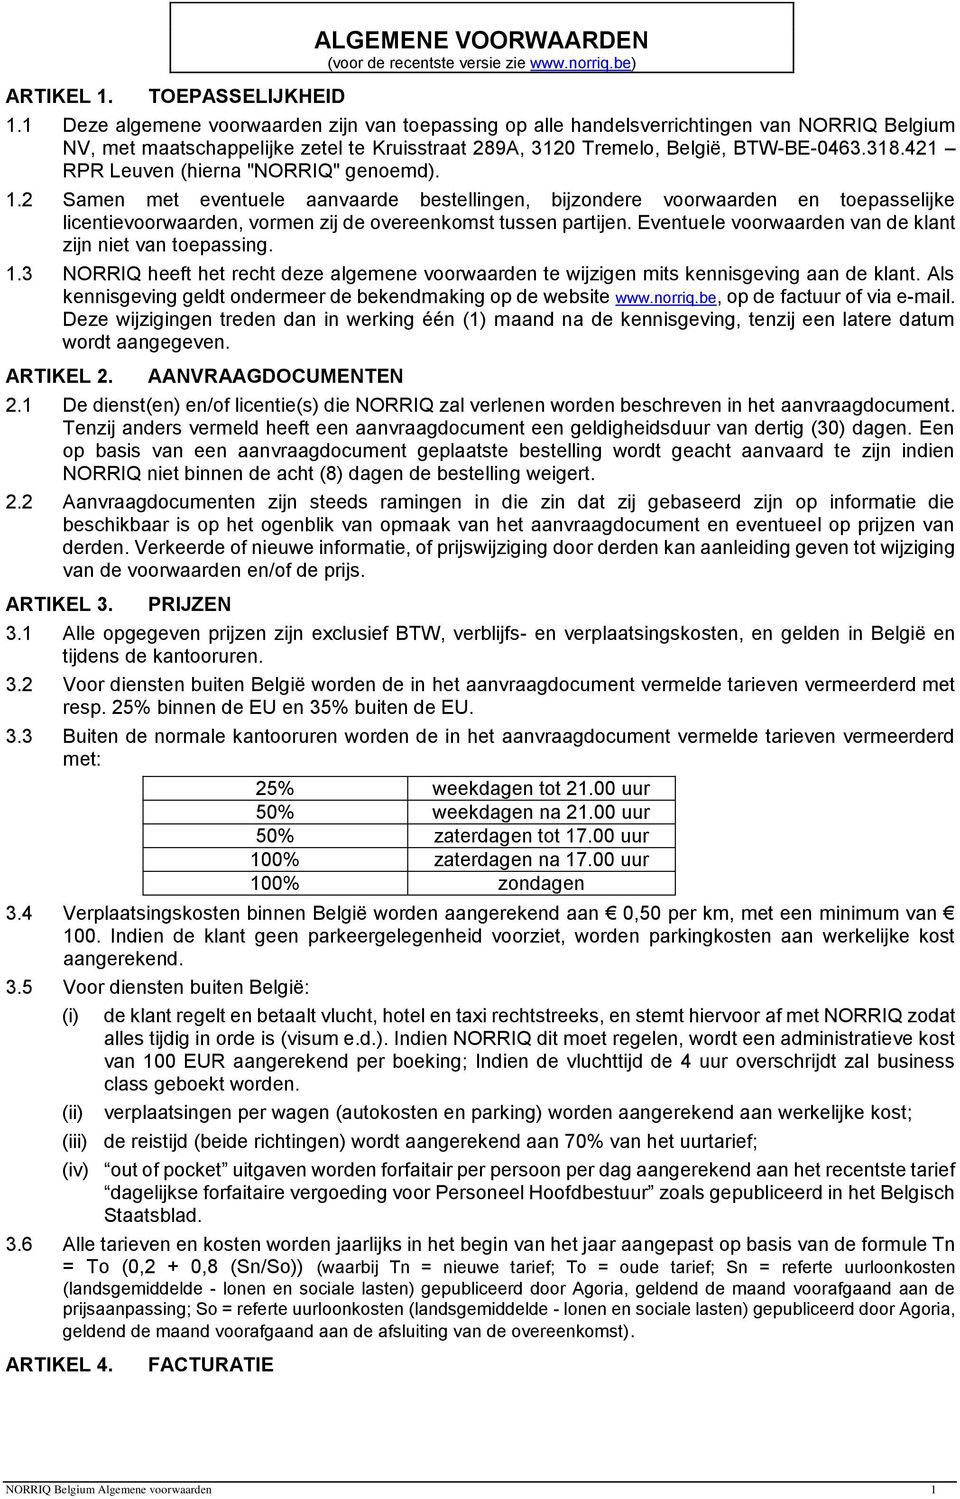 421 RPR Leuven (hierna "NORRIQ" genoemd). 1.2 Samen met eventuele aanvaarde bestellingen, bijzondere voorwaarden en toepasselijke licentievoorwaarden, vormen zij de overeenkomst tussen partijen.